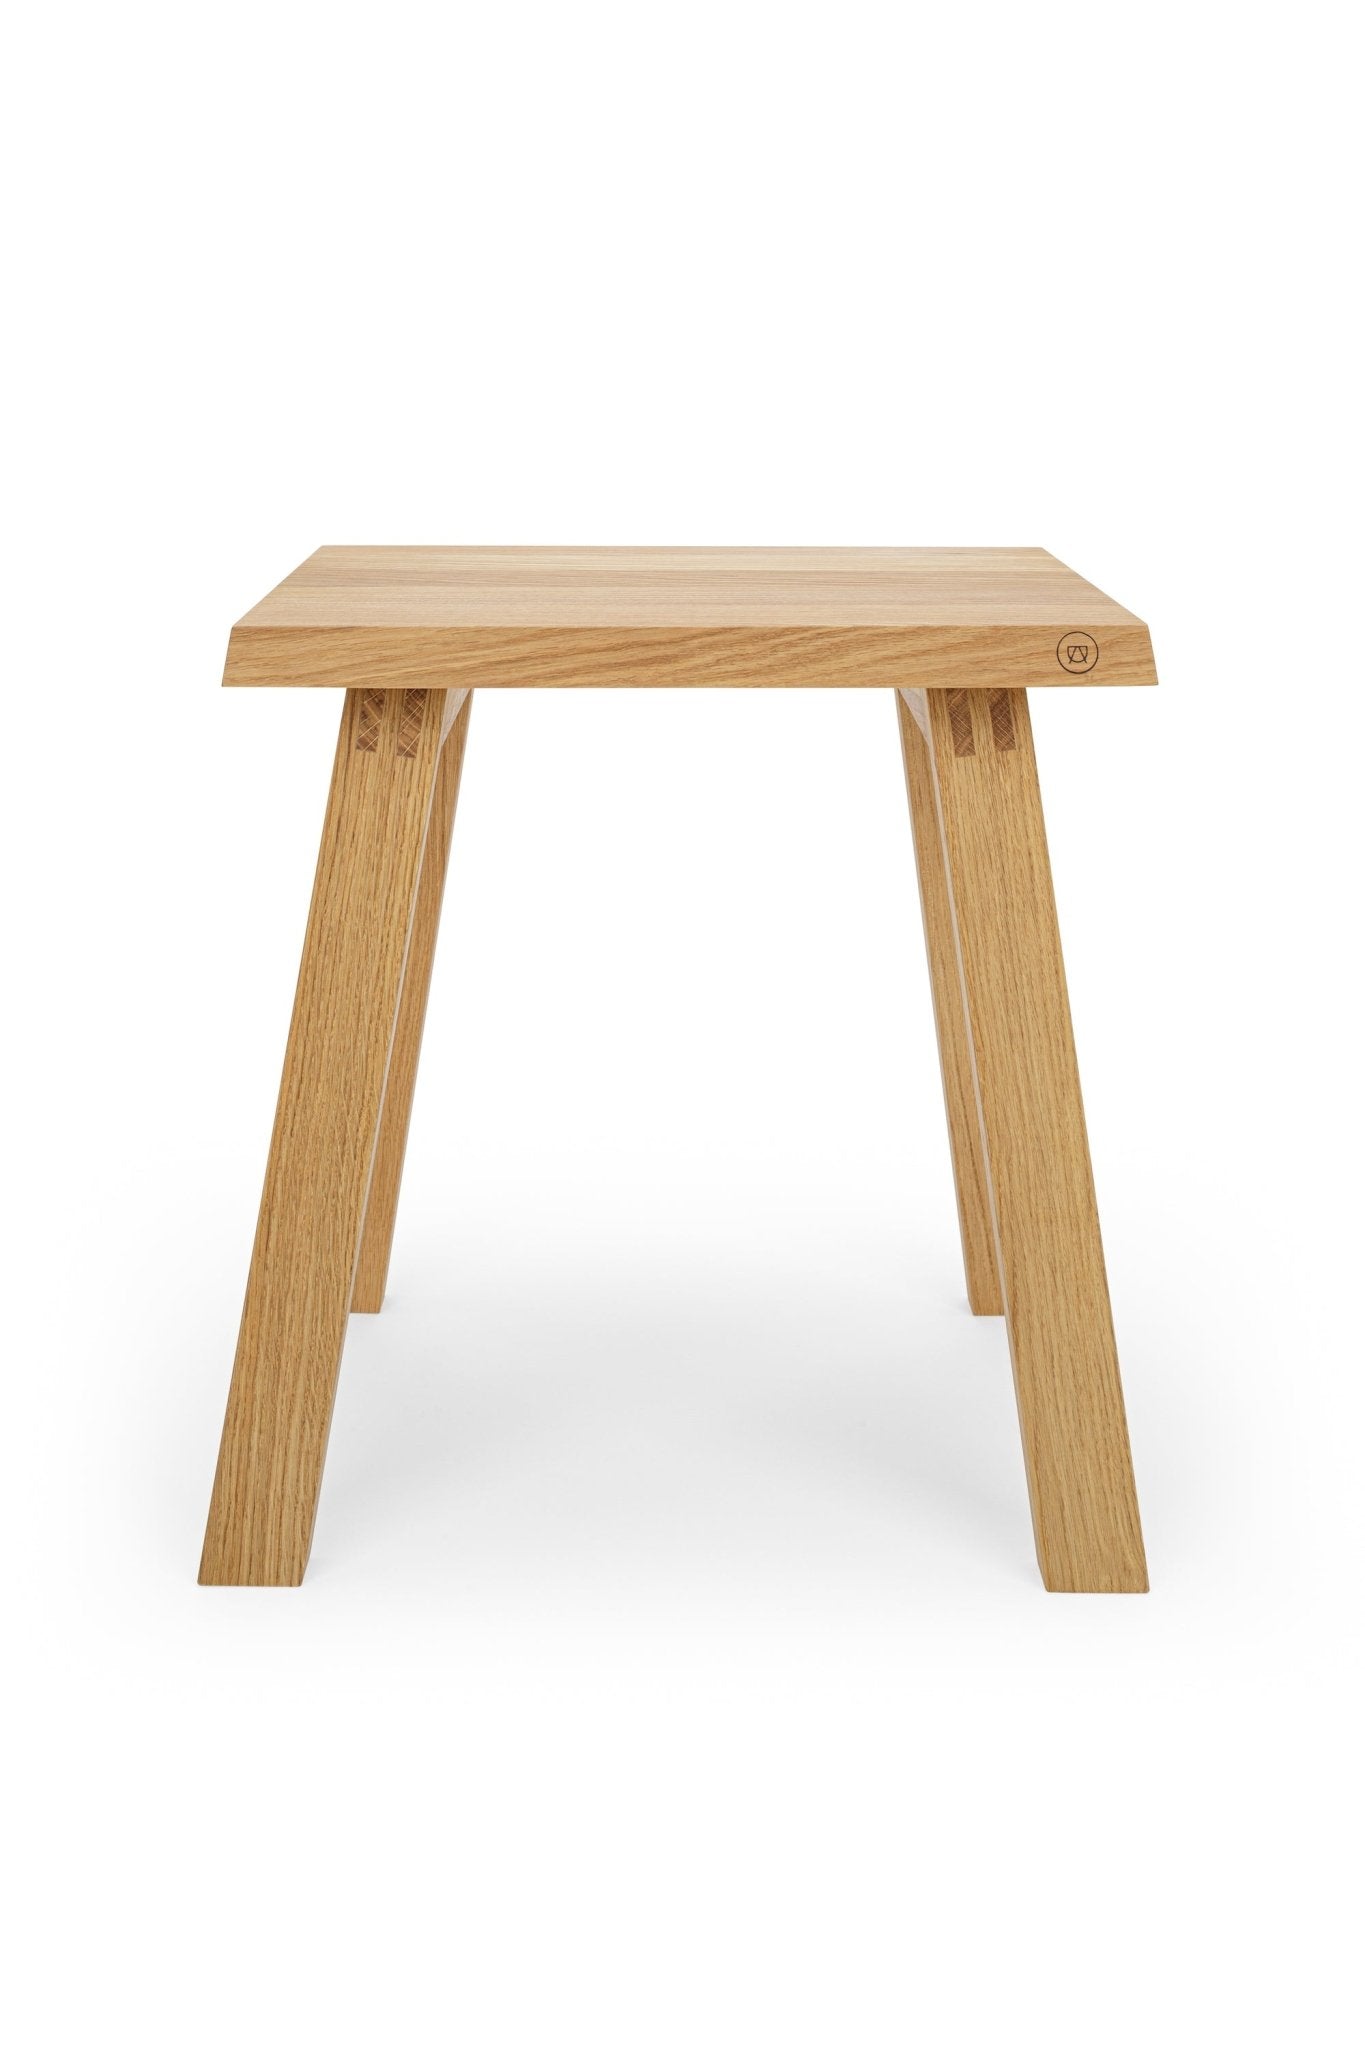 Elegant stool “Fritz” made of oak wood